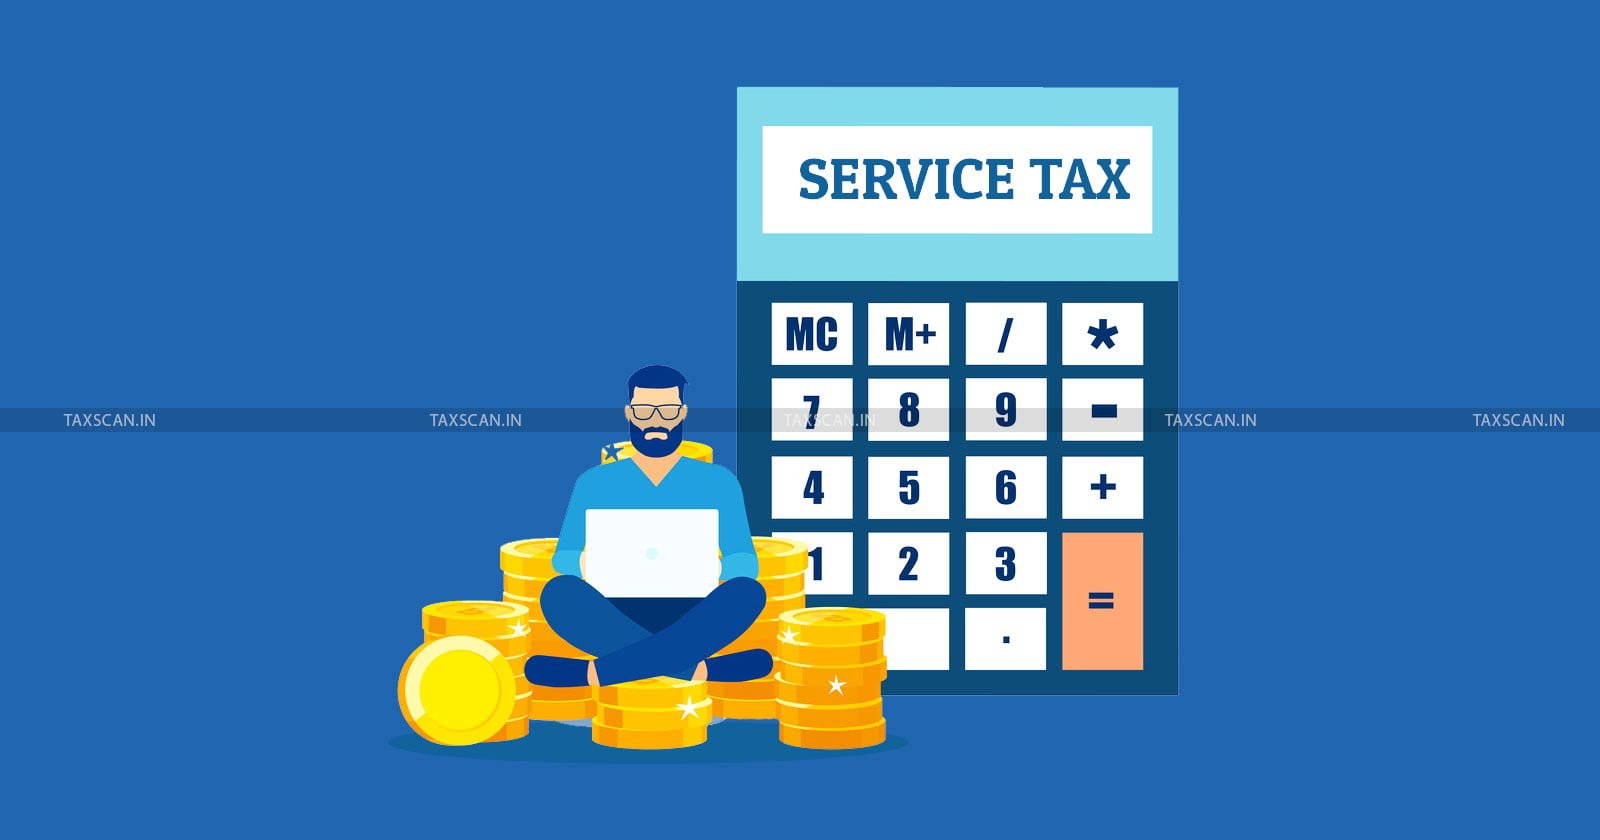 Sub-Contractor - Sub-Contractor - Main Contractor - Service Tax - CESTAT - taxscan